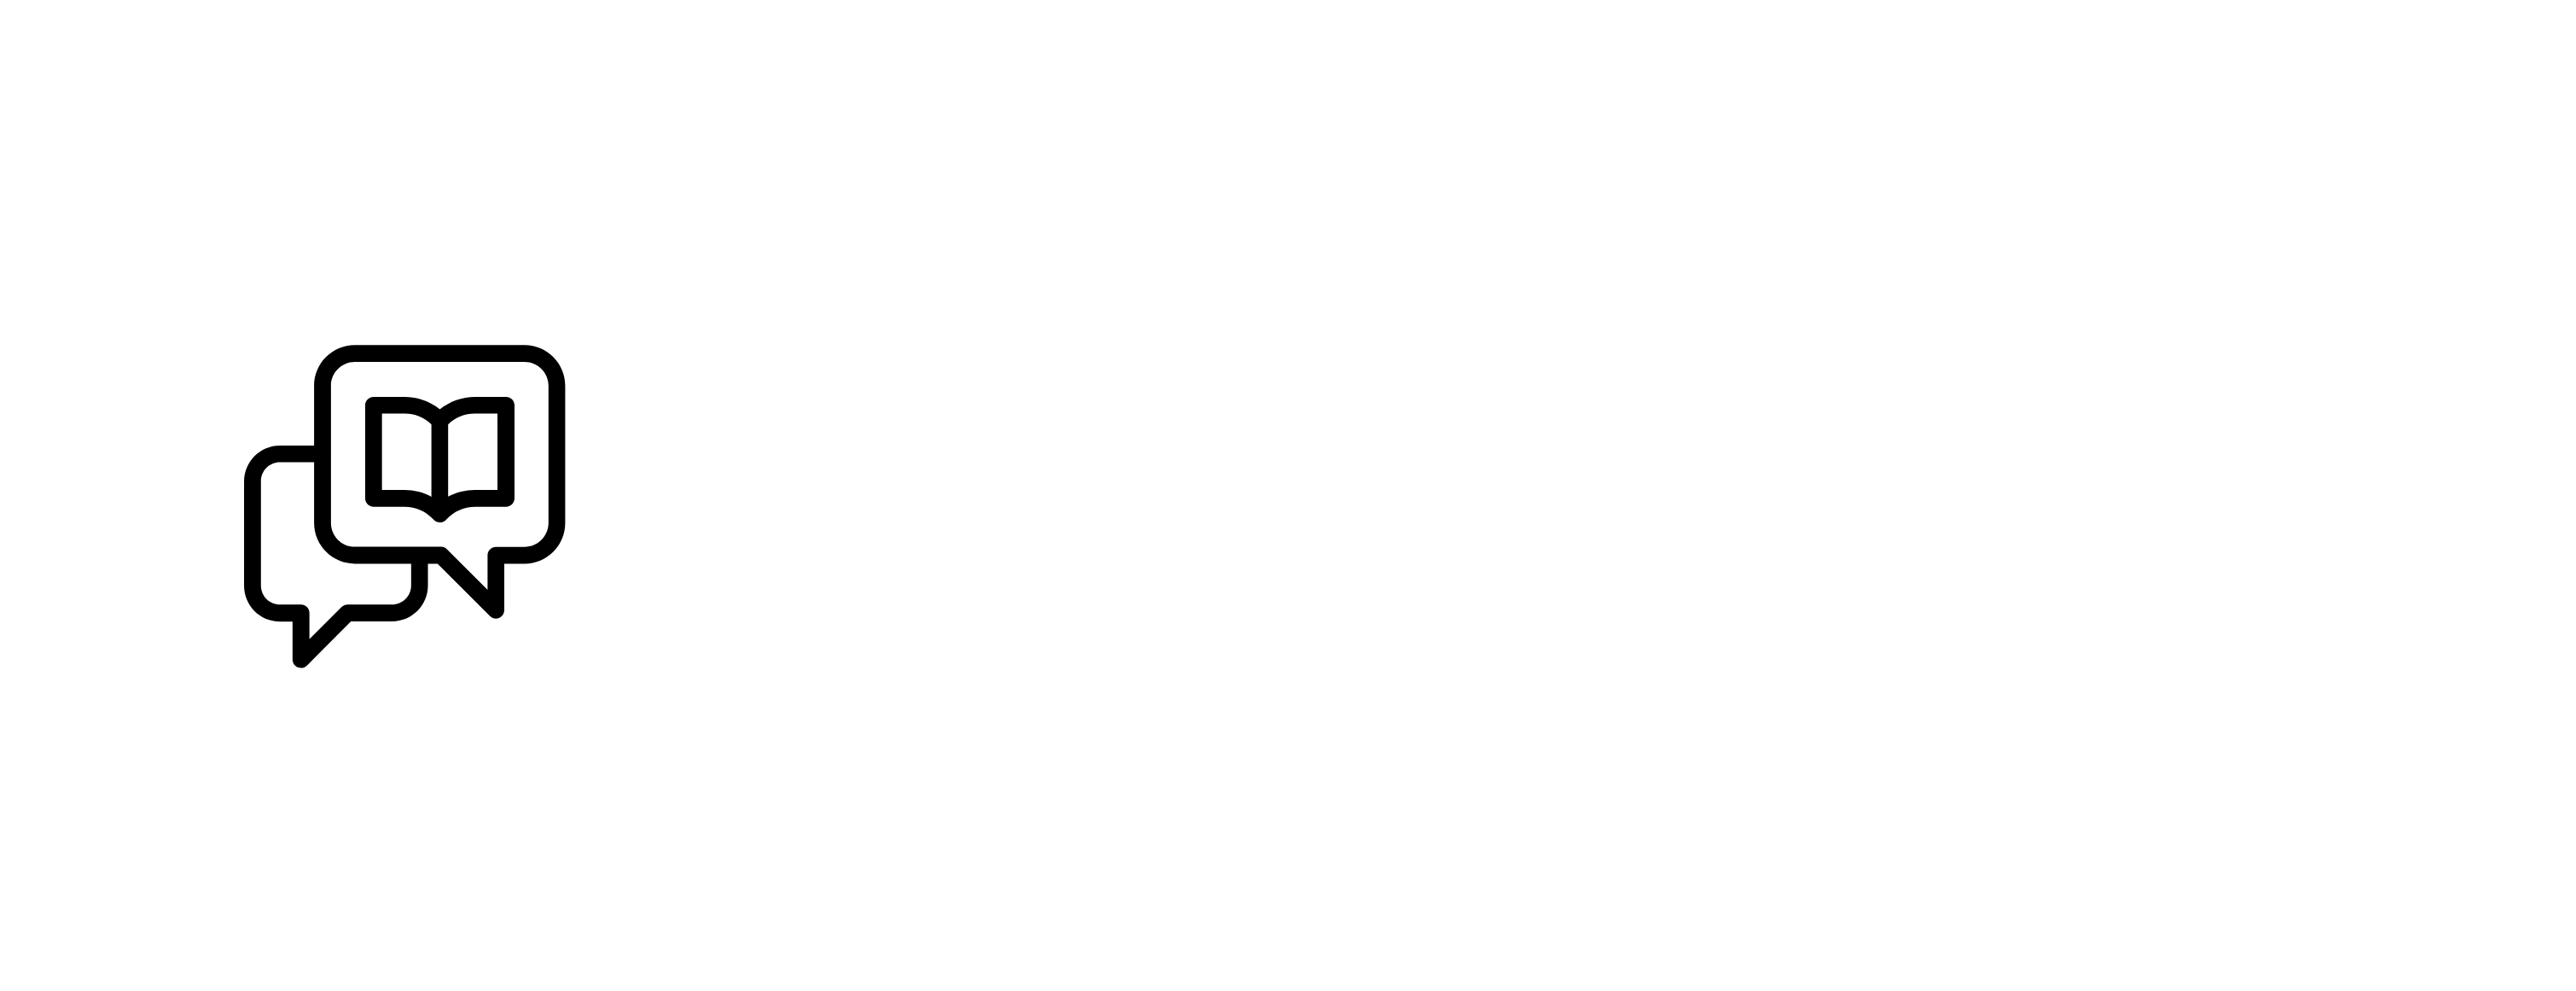 Coriolis Company